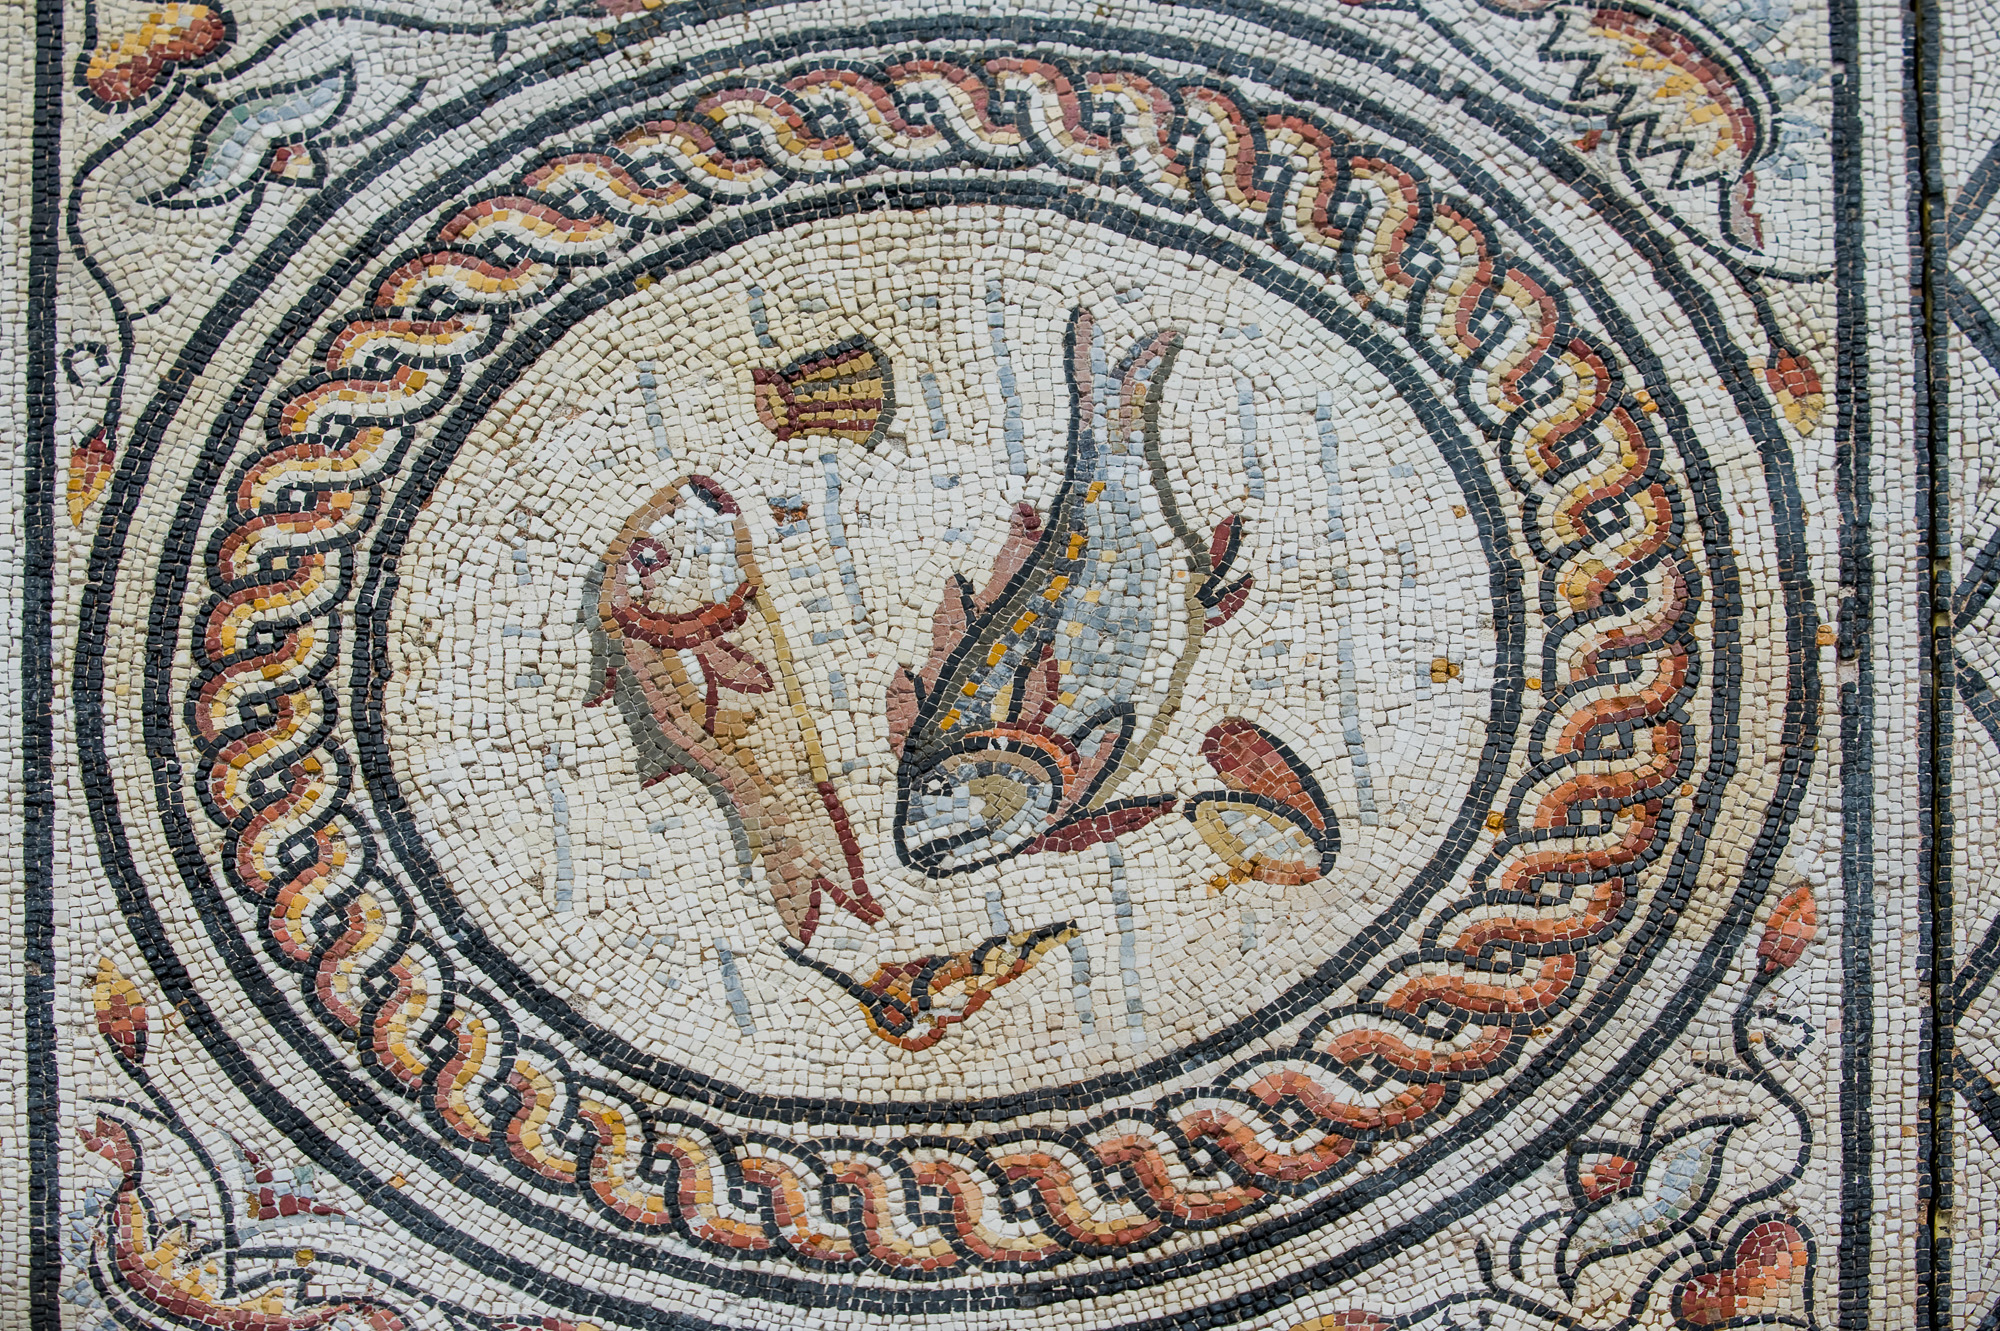 Musée archéologique, fouilles extérieures : mosaïques.